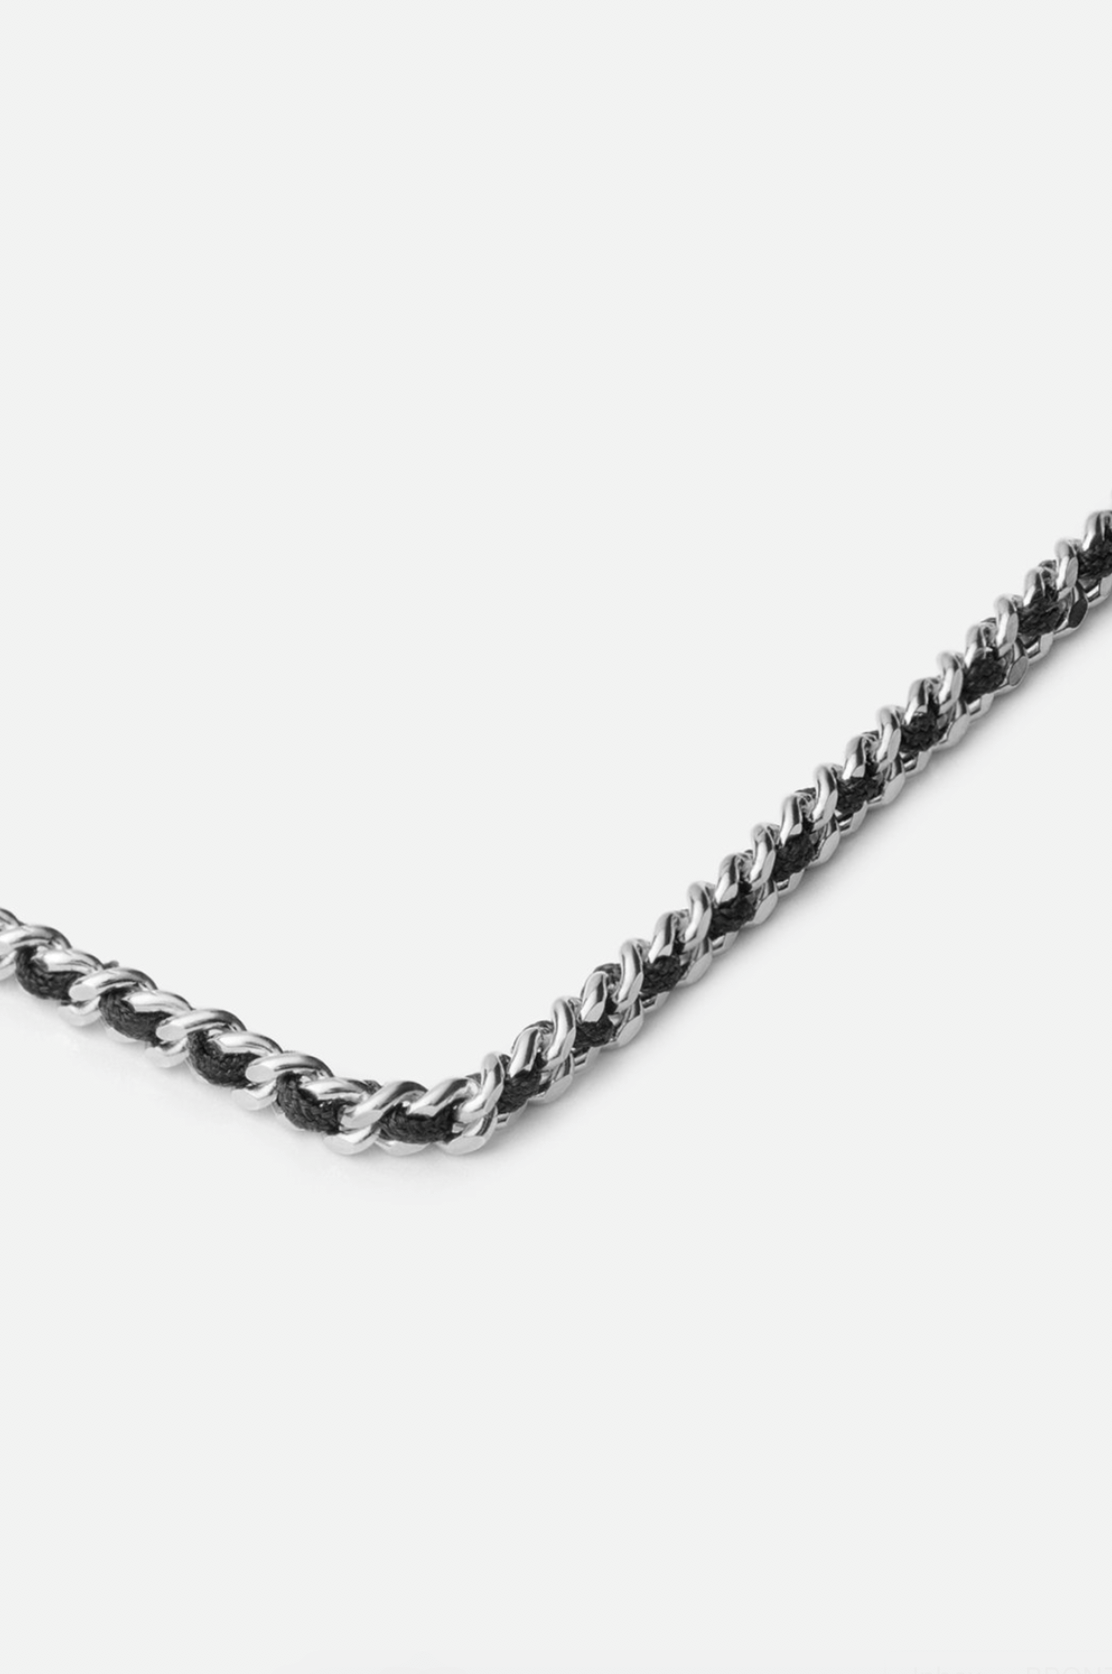 Miansai Dove Woven Chain Necklace Silver